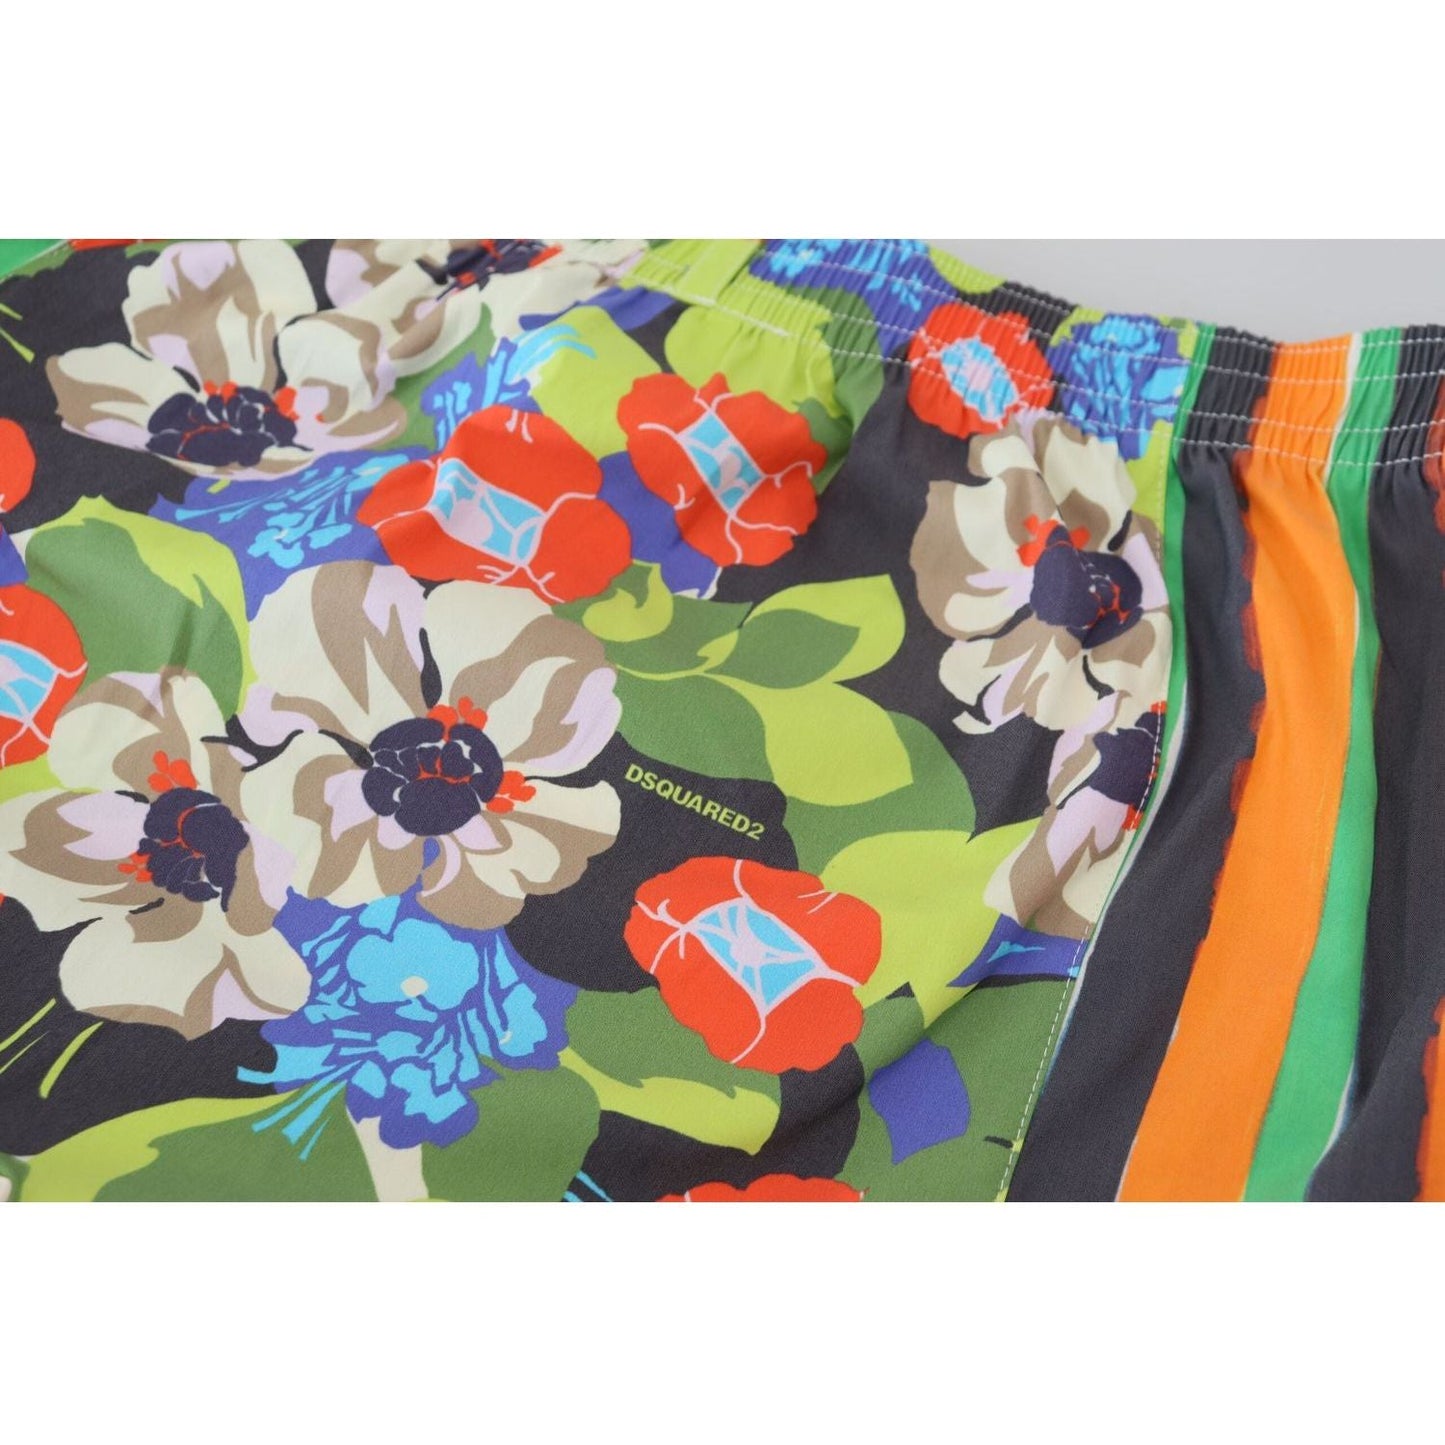 Dsquared² Multicolor Floral Men's Swim Shorts multicolor-floral-print-men-beachwear-shorts-swimwear